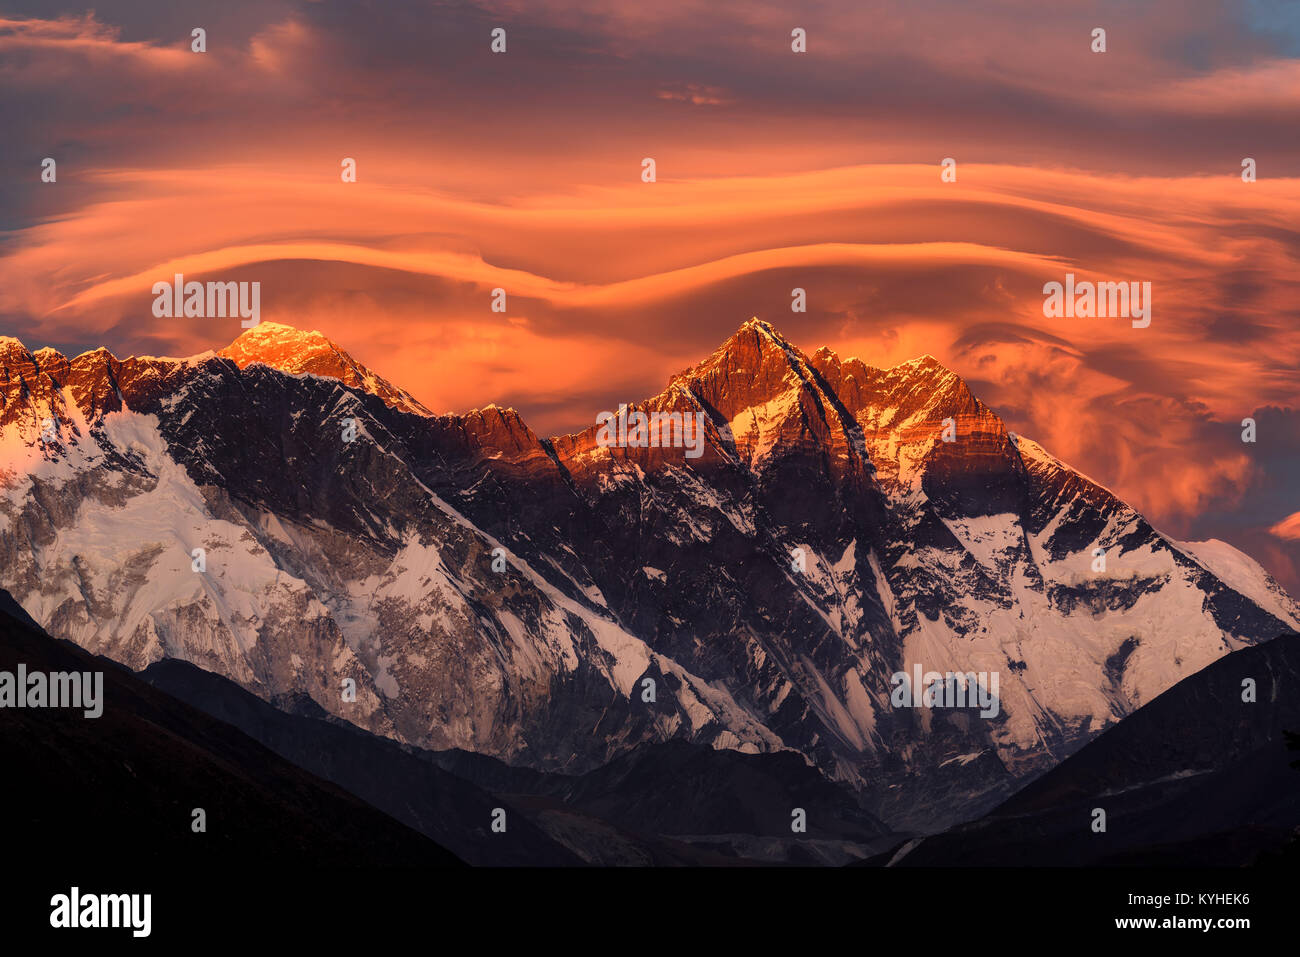 Nuptse, Everest and Lhotse at sunset, Tengboche, Nepal Stock Photo